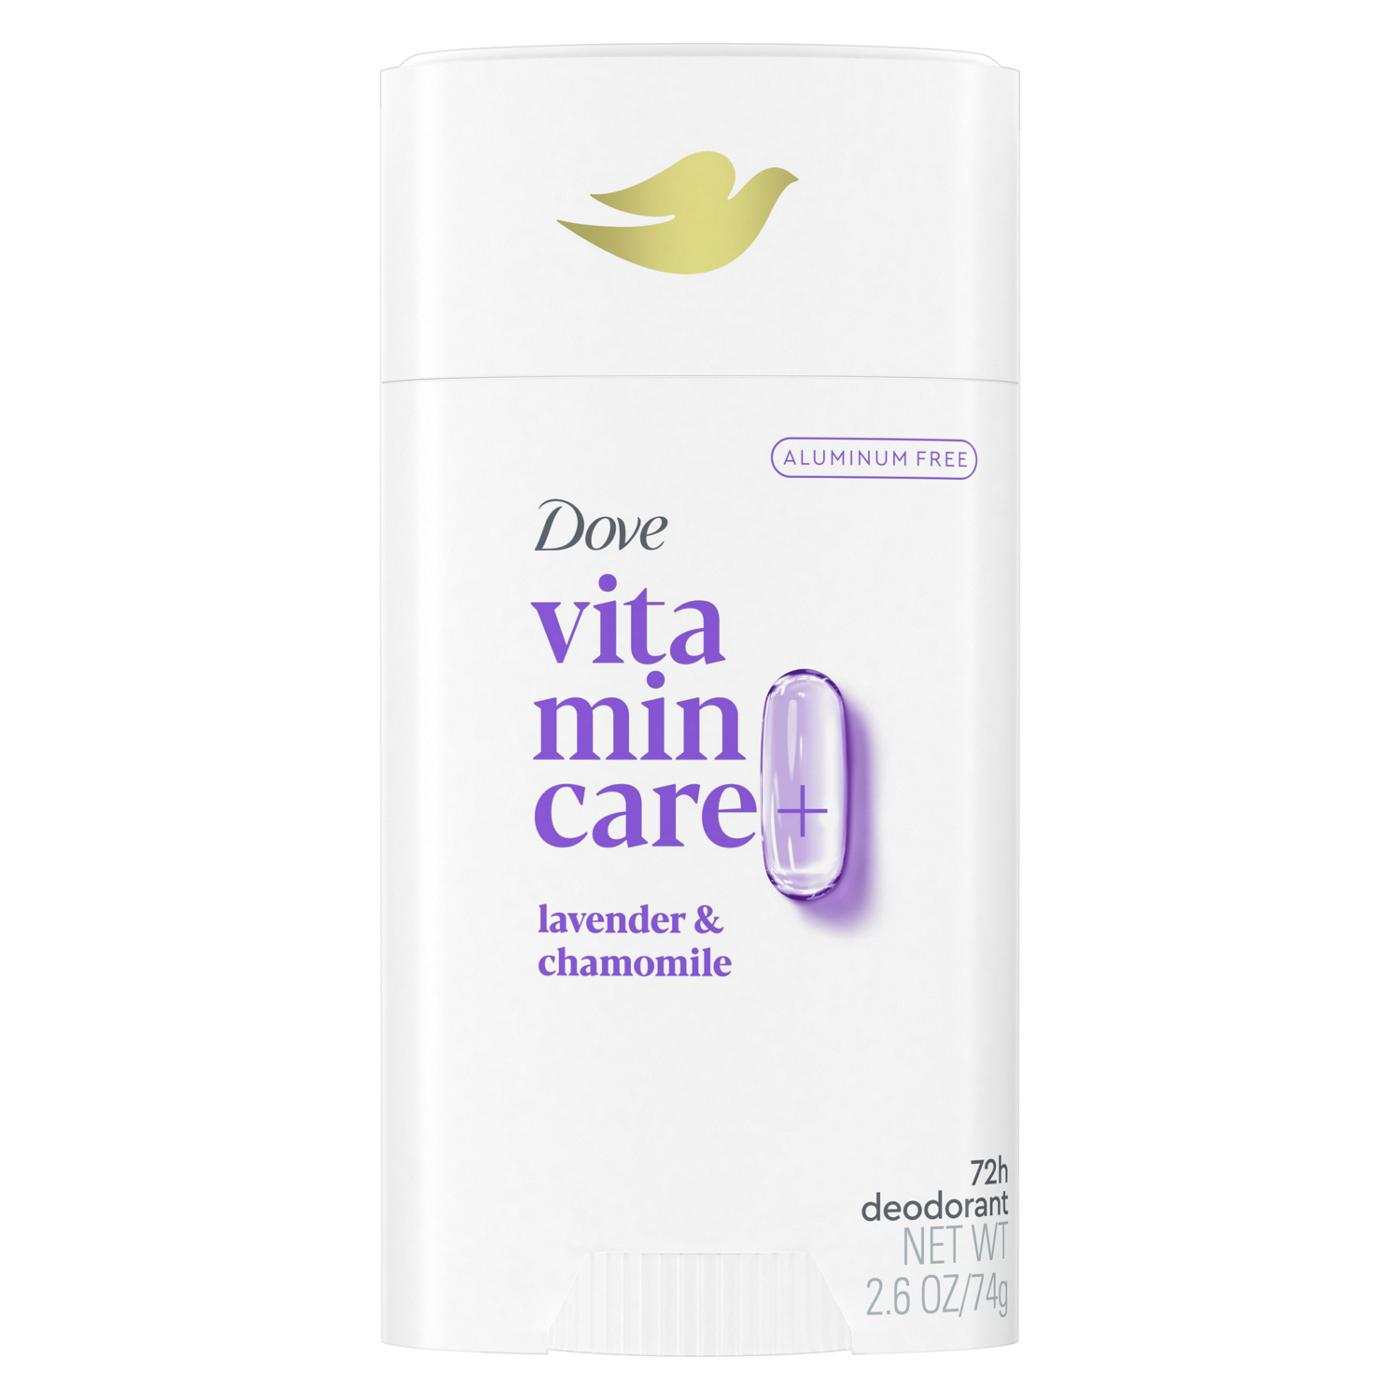 Dove Vitamin Care+ Deodorant - Lavender & Chamomile; image 1 of 2